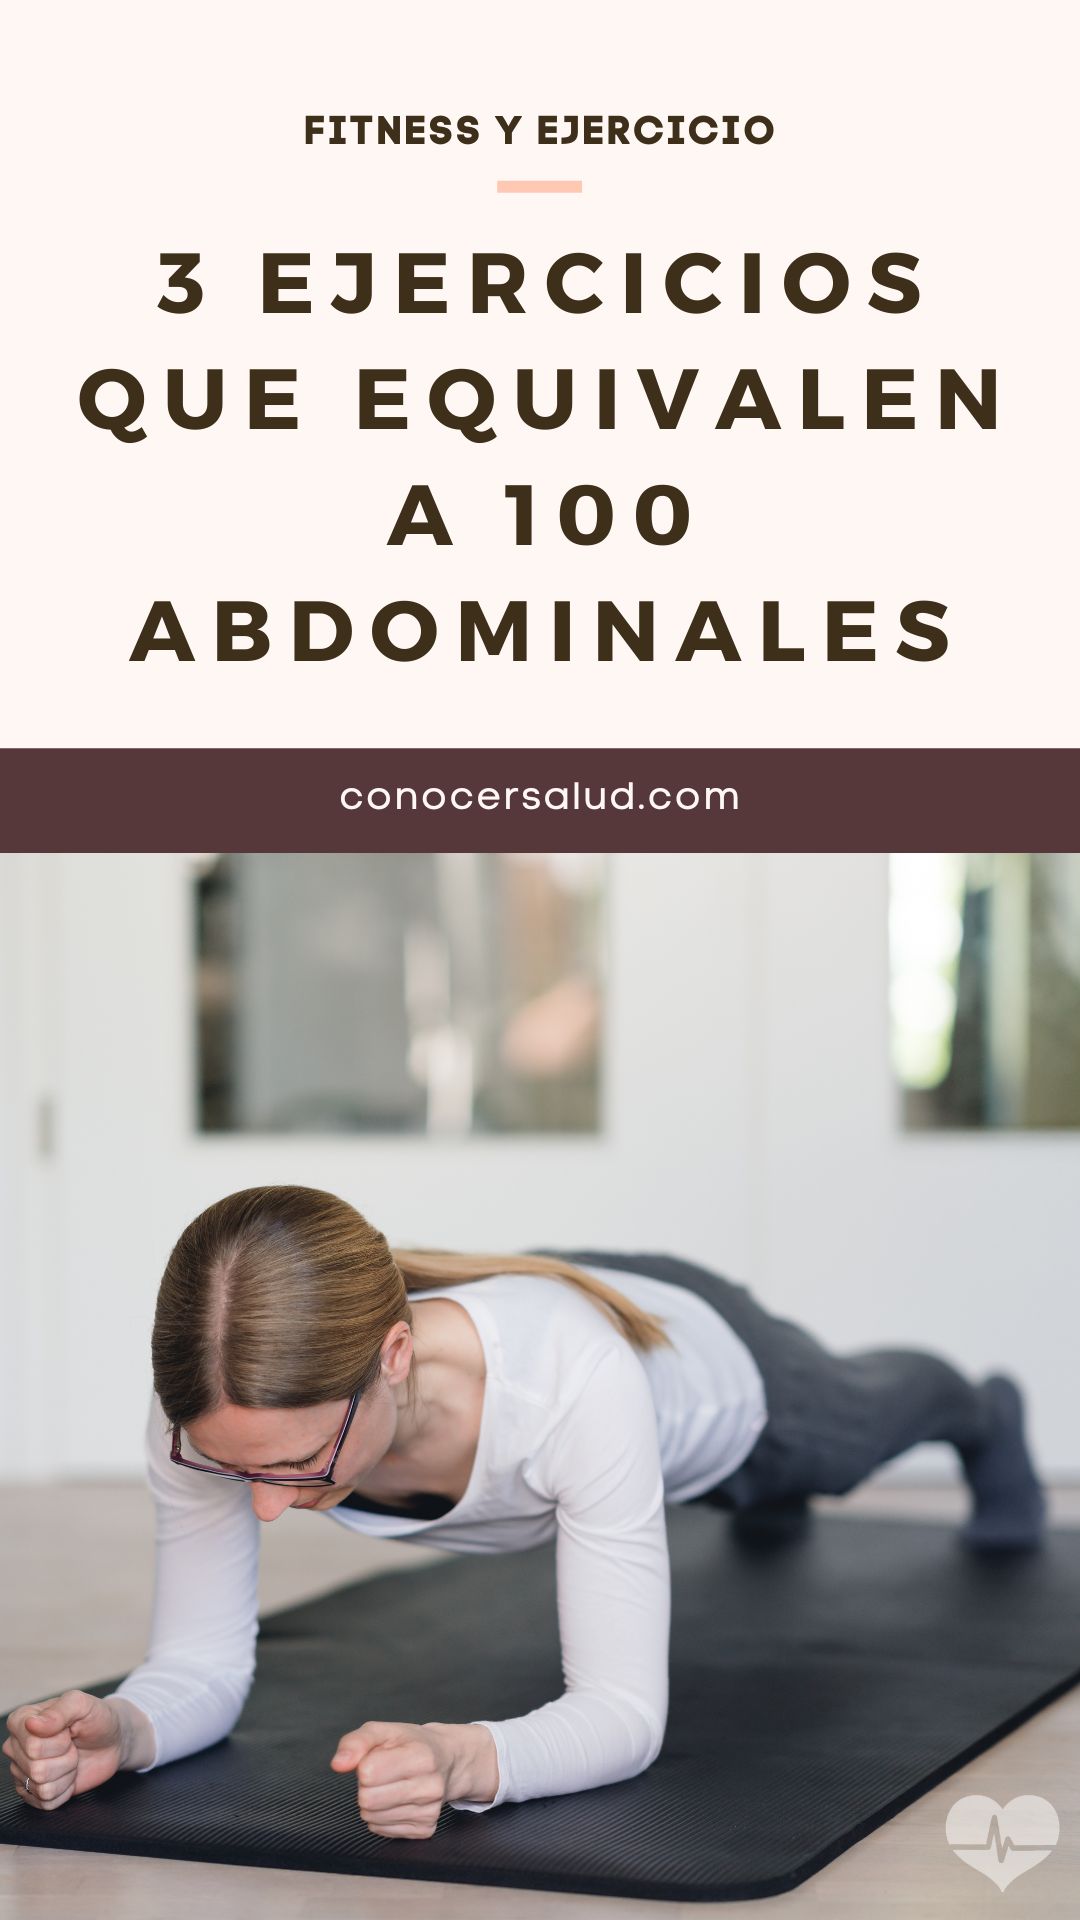 3 ejercicios que equivalen a 100 abdominales